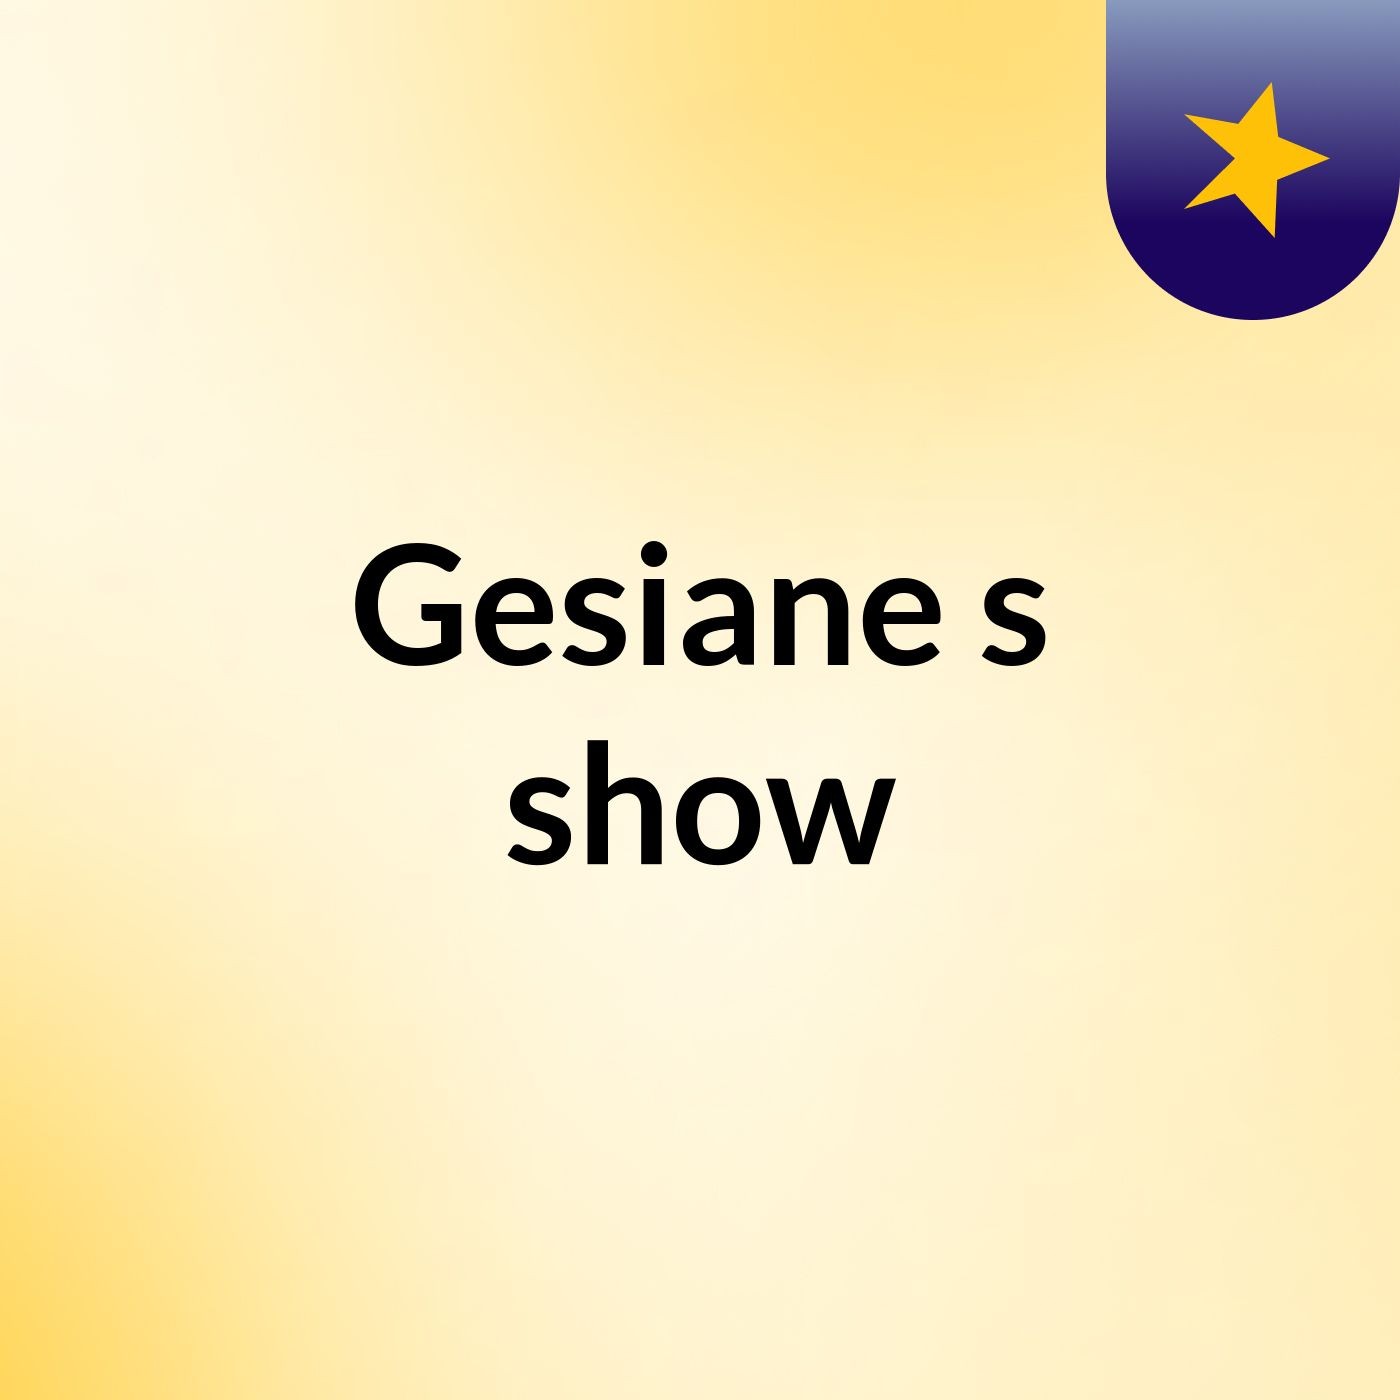 Gesiane's show